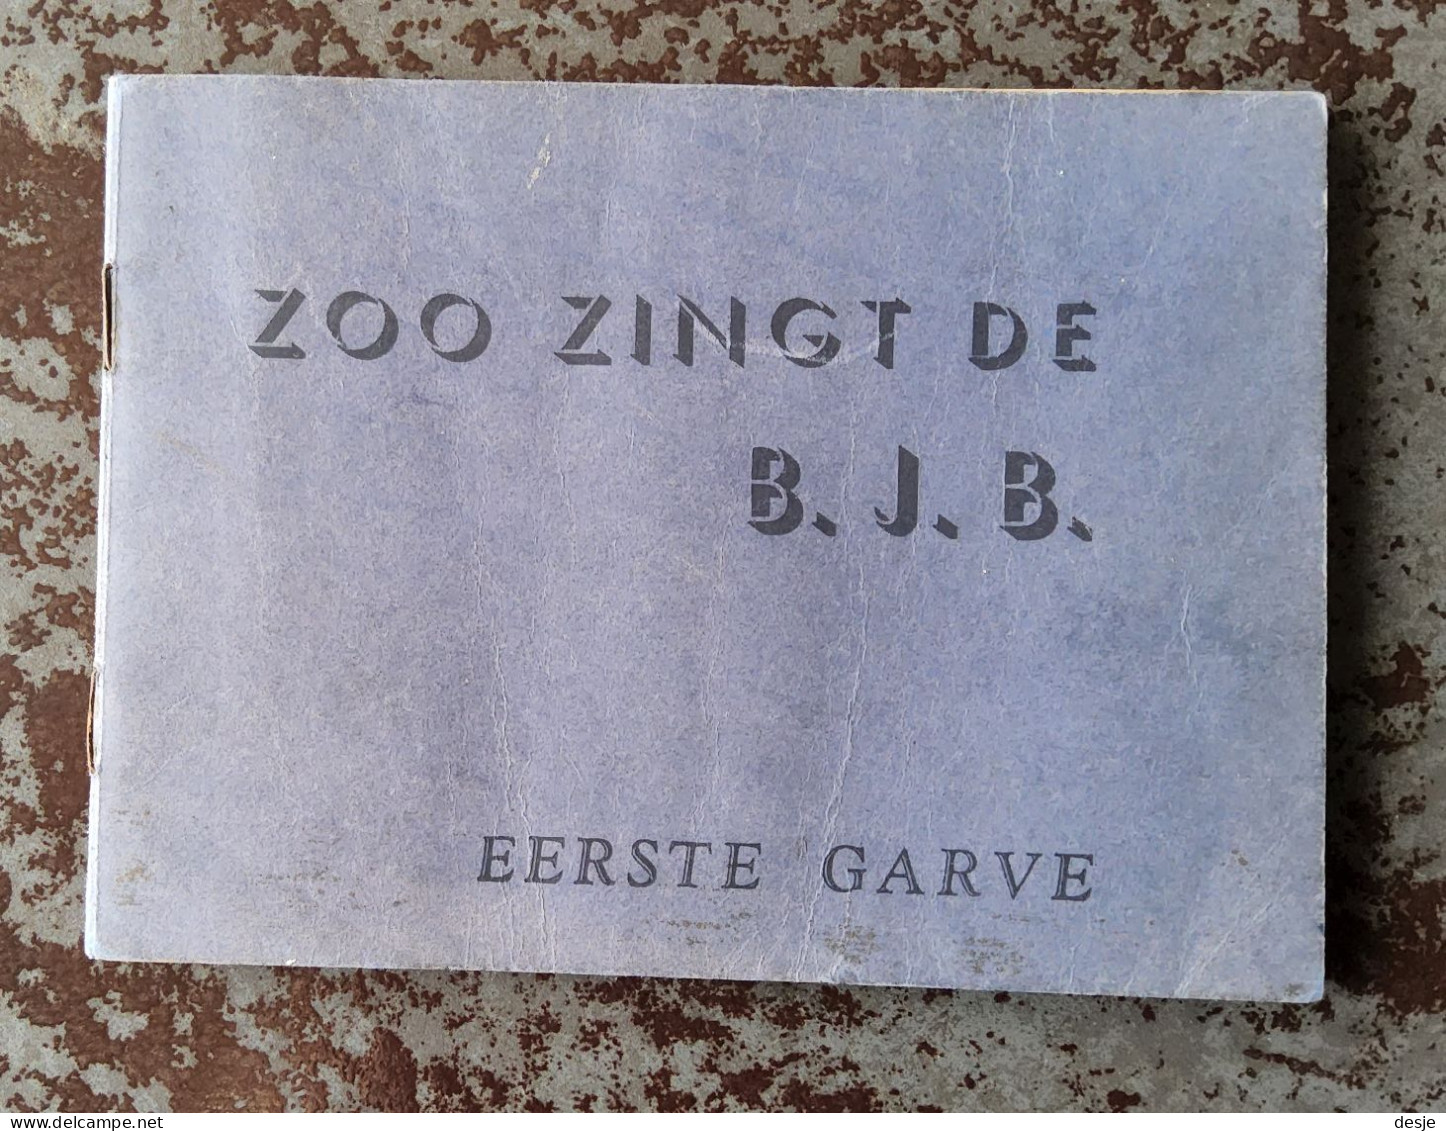 Zo Zingt De B.J.B. Eerste Garve, 64 Pp., Leuven1921 - Antique